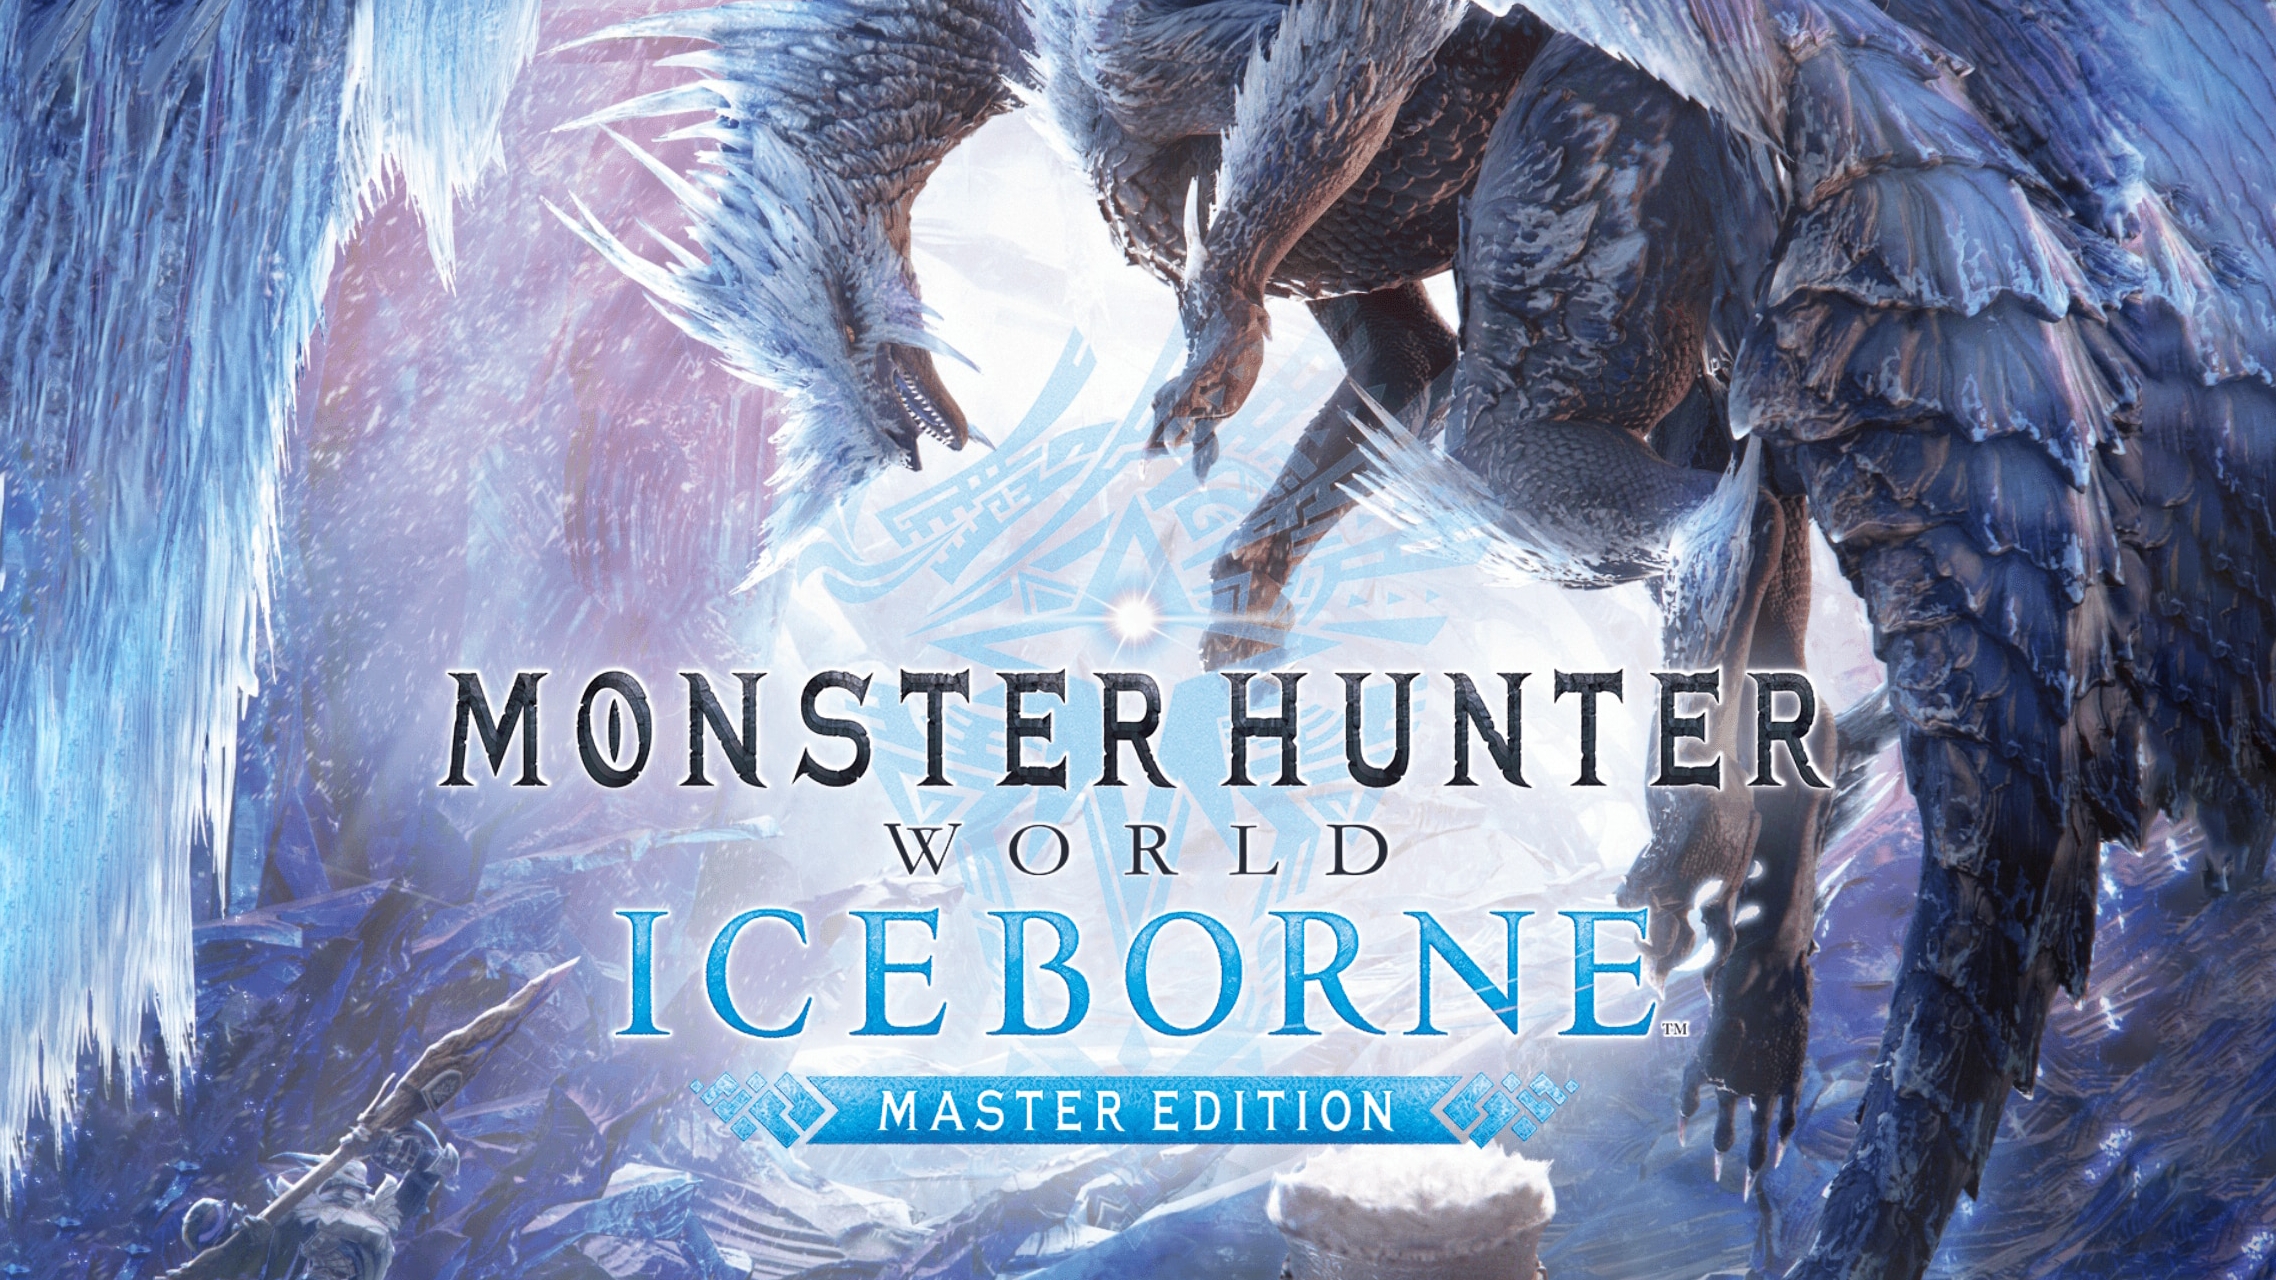 Buy Monster Hunter World Iceborne Master Edition Steam